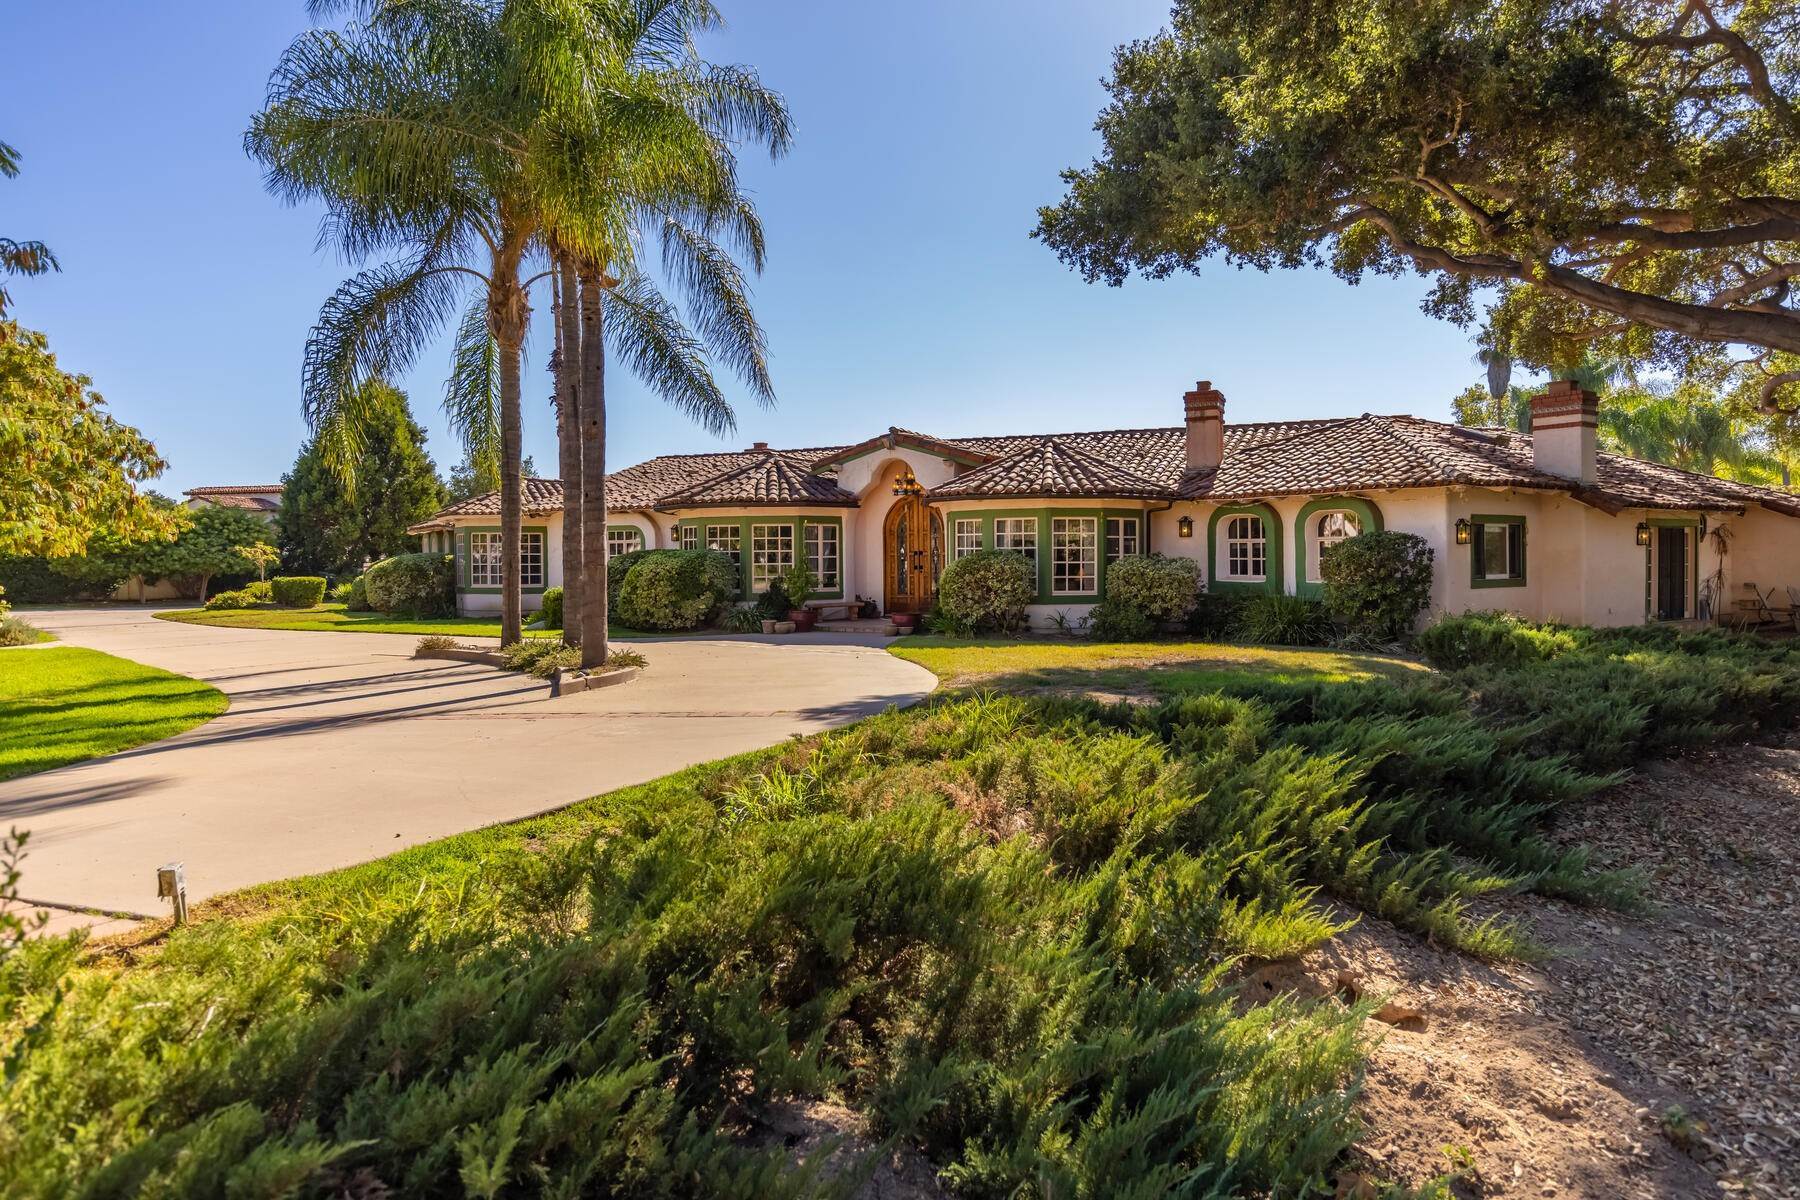 Property for Sale at Casa de los Encinos 12147 Linda Flora Drive Ojai, California 93023 United States